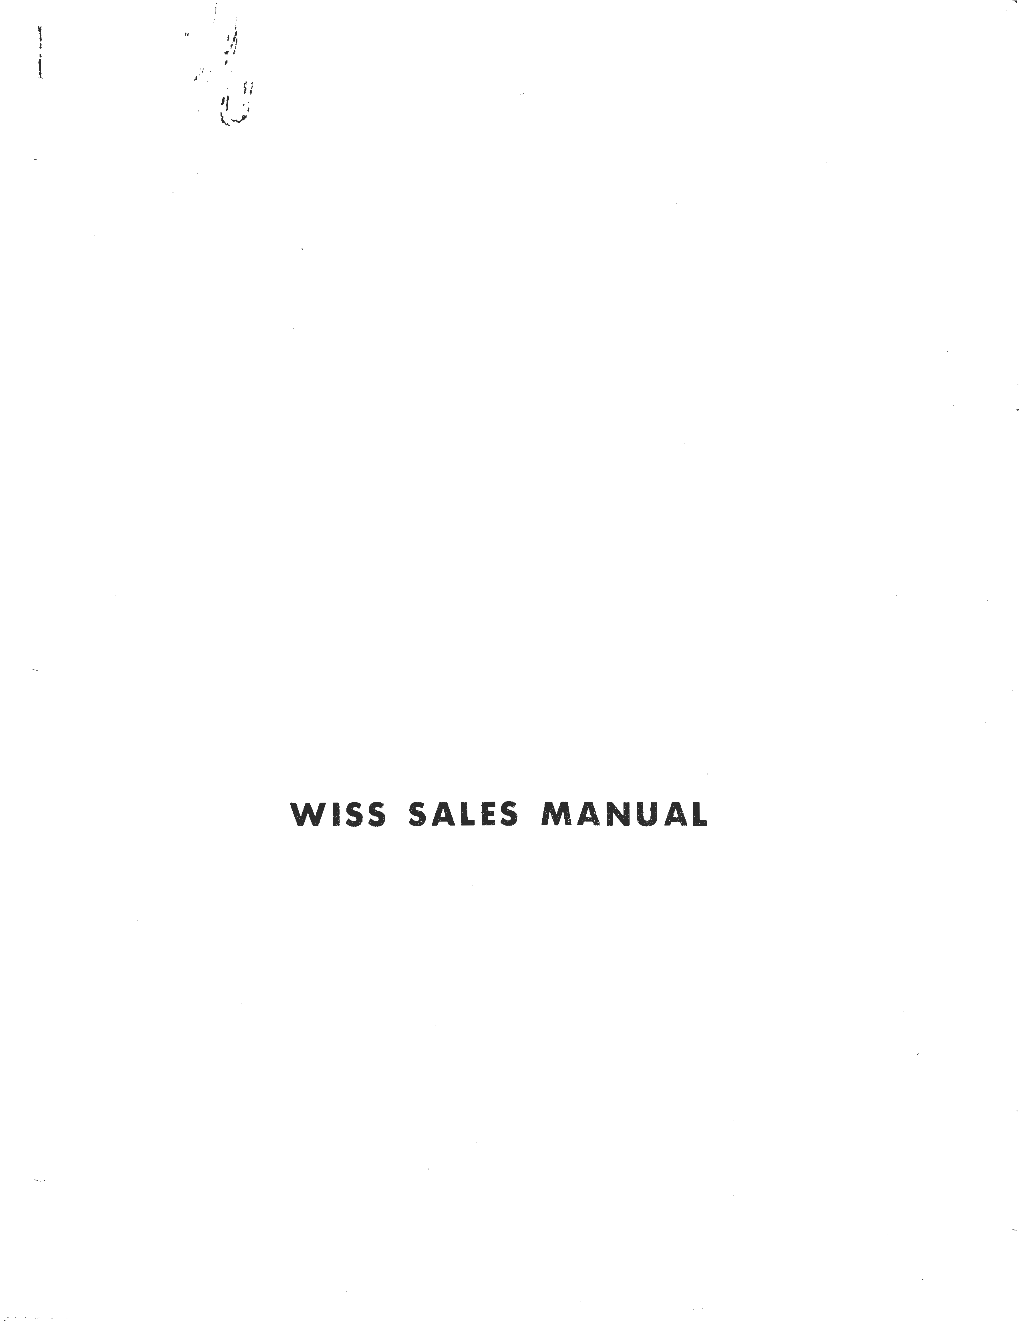 Wiss Sales Manual